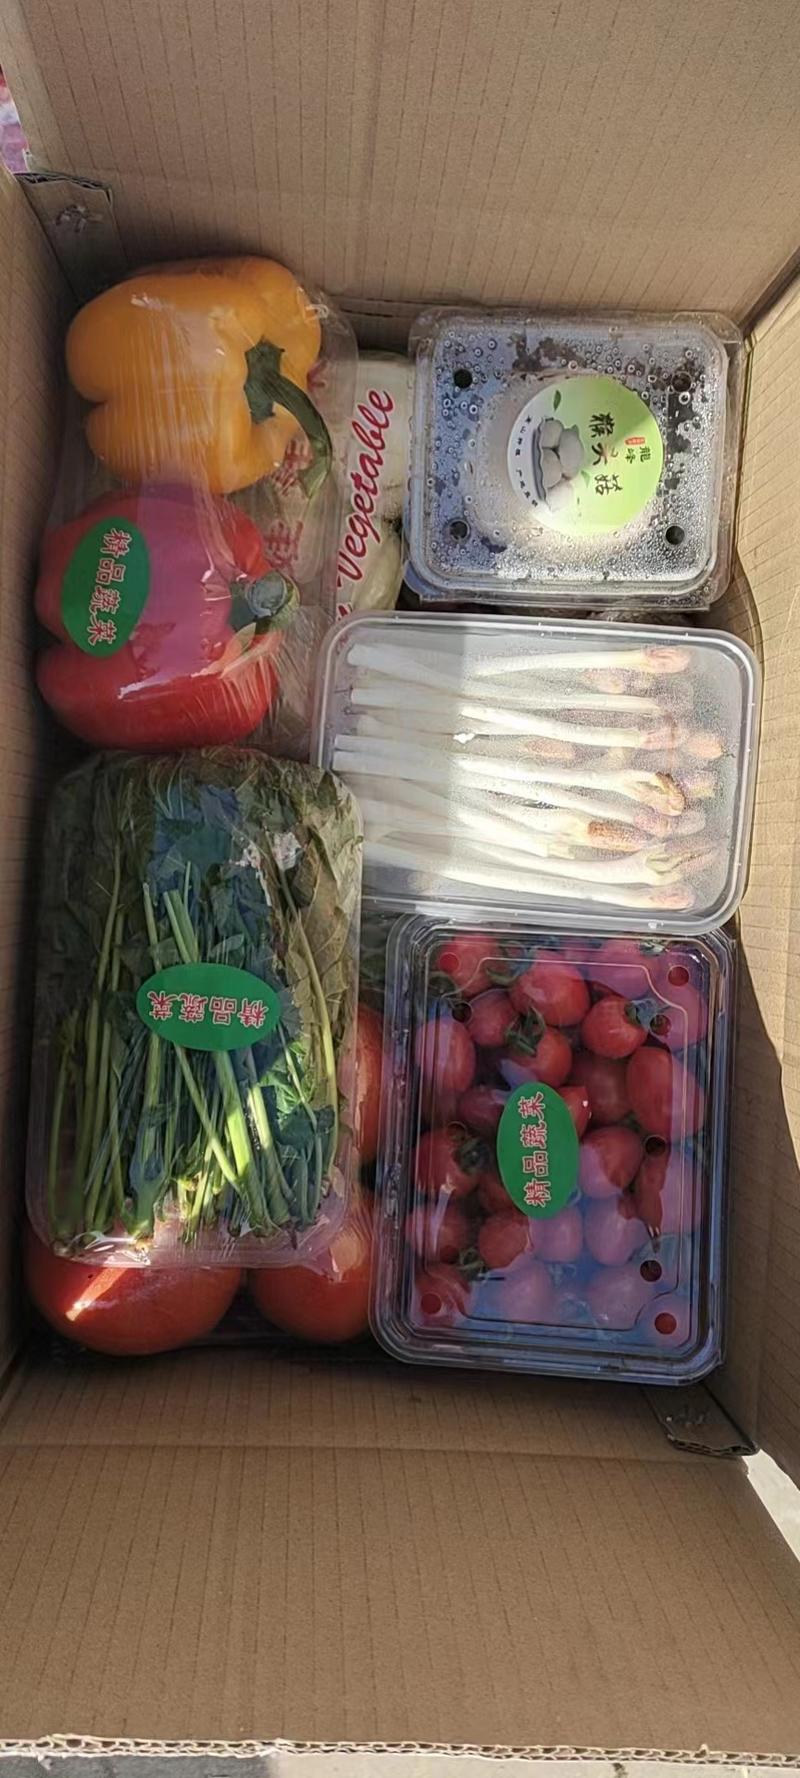 【热卖中】寿光蔬菜包套菜多品种规格齐全春节公司精品福利礼盒